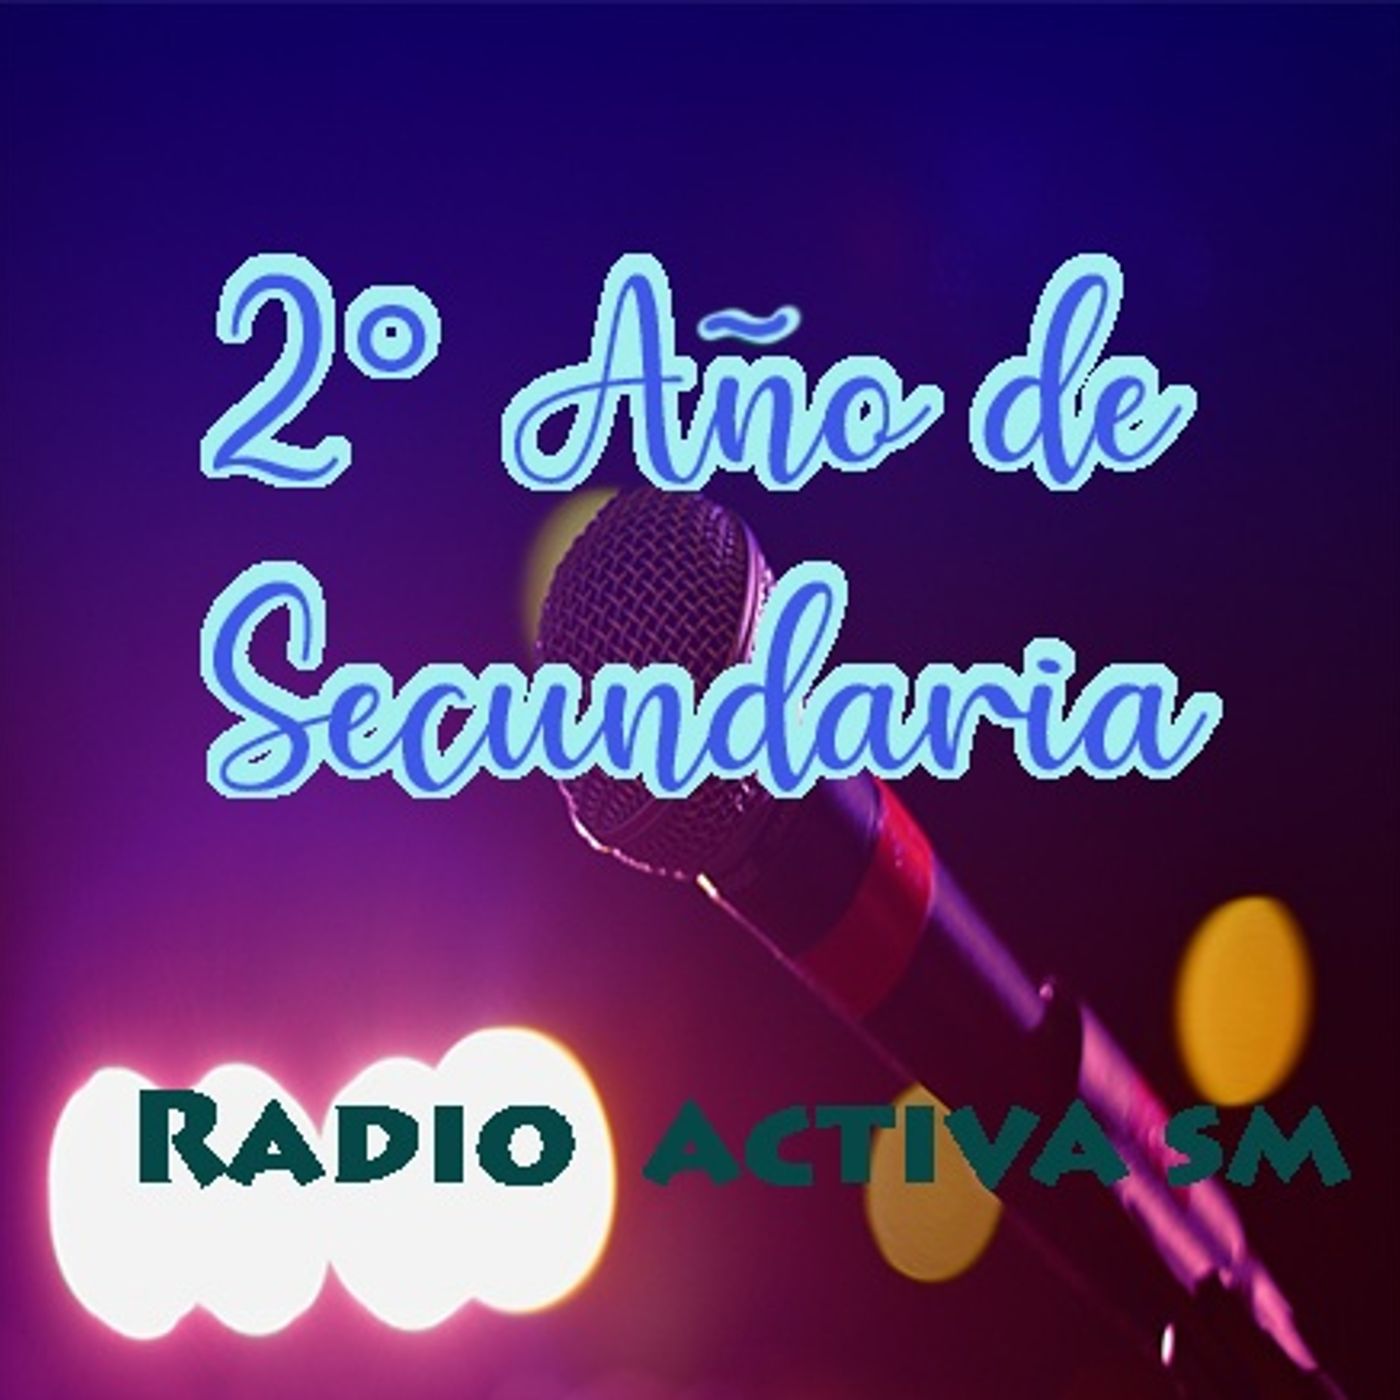 2 año de Secundaria - Radio Activa SM